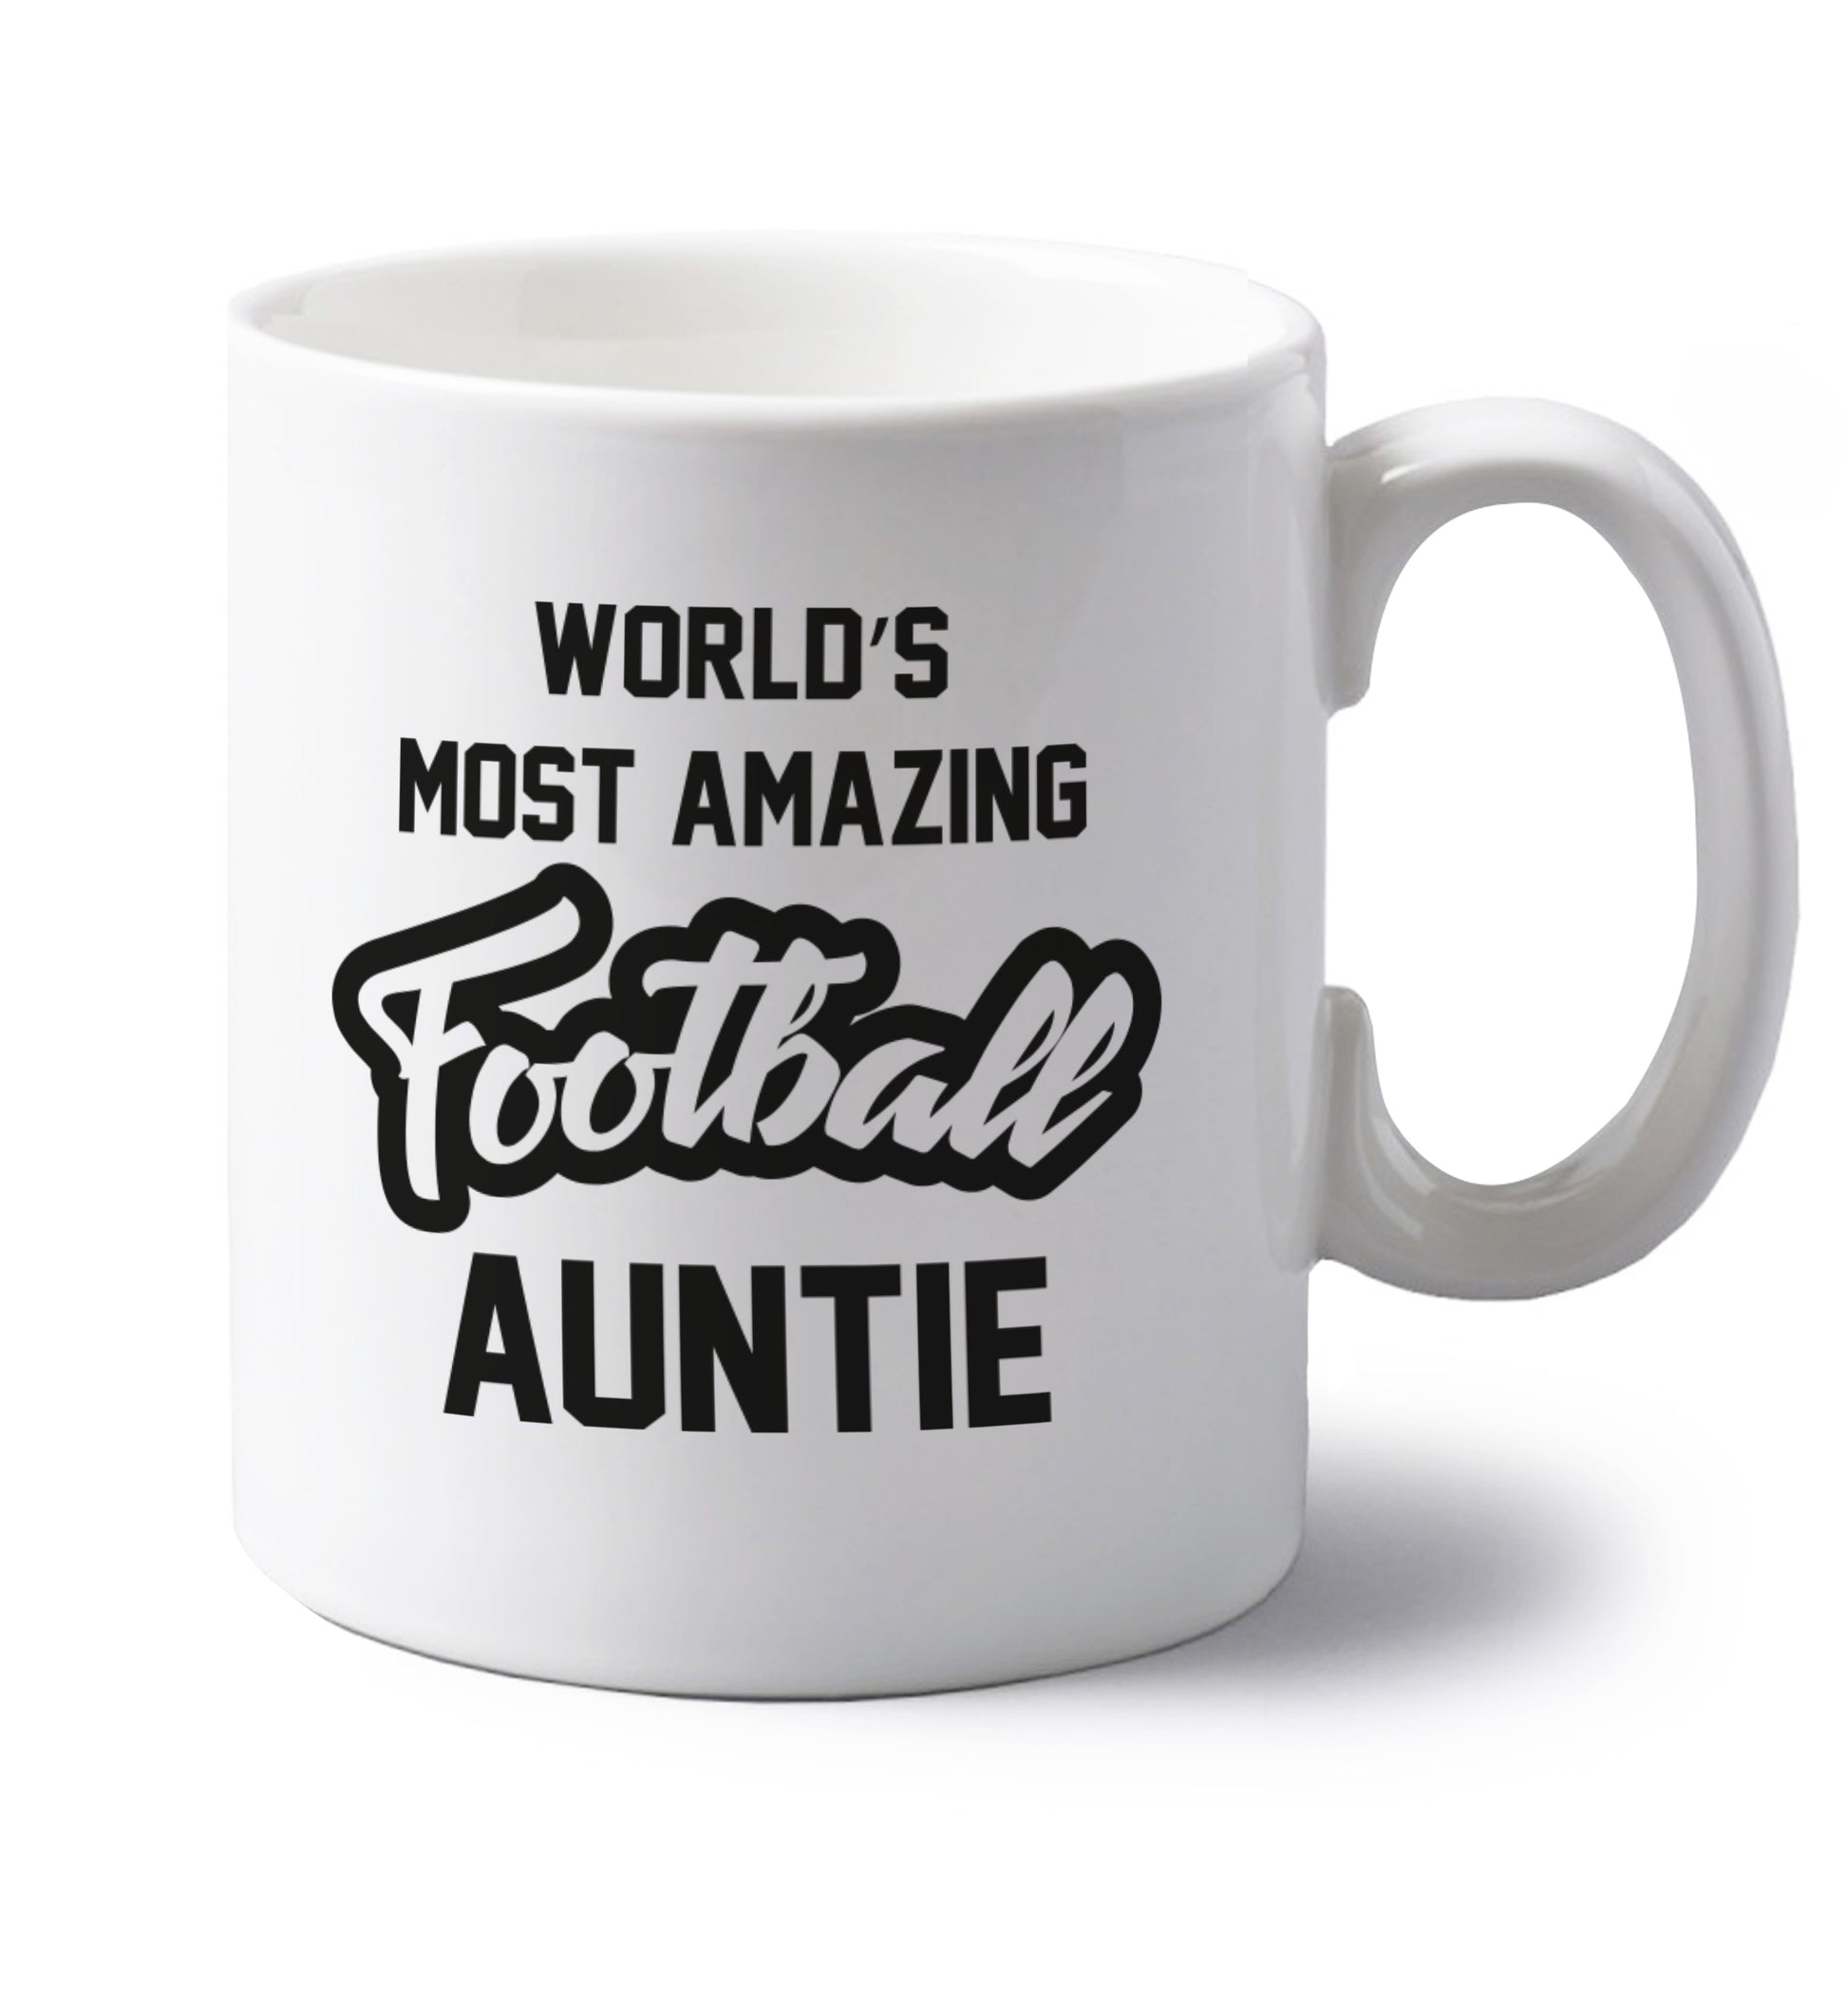 Worlds most amazing football auntie left handed white ceramic mug 